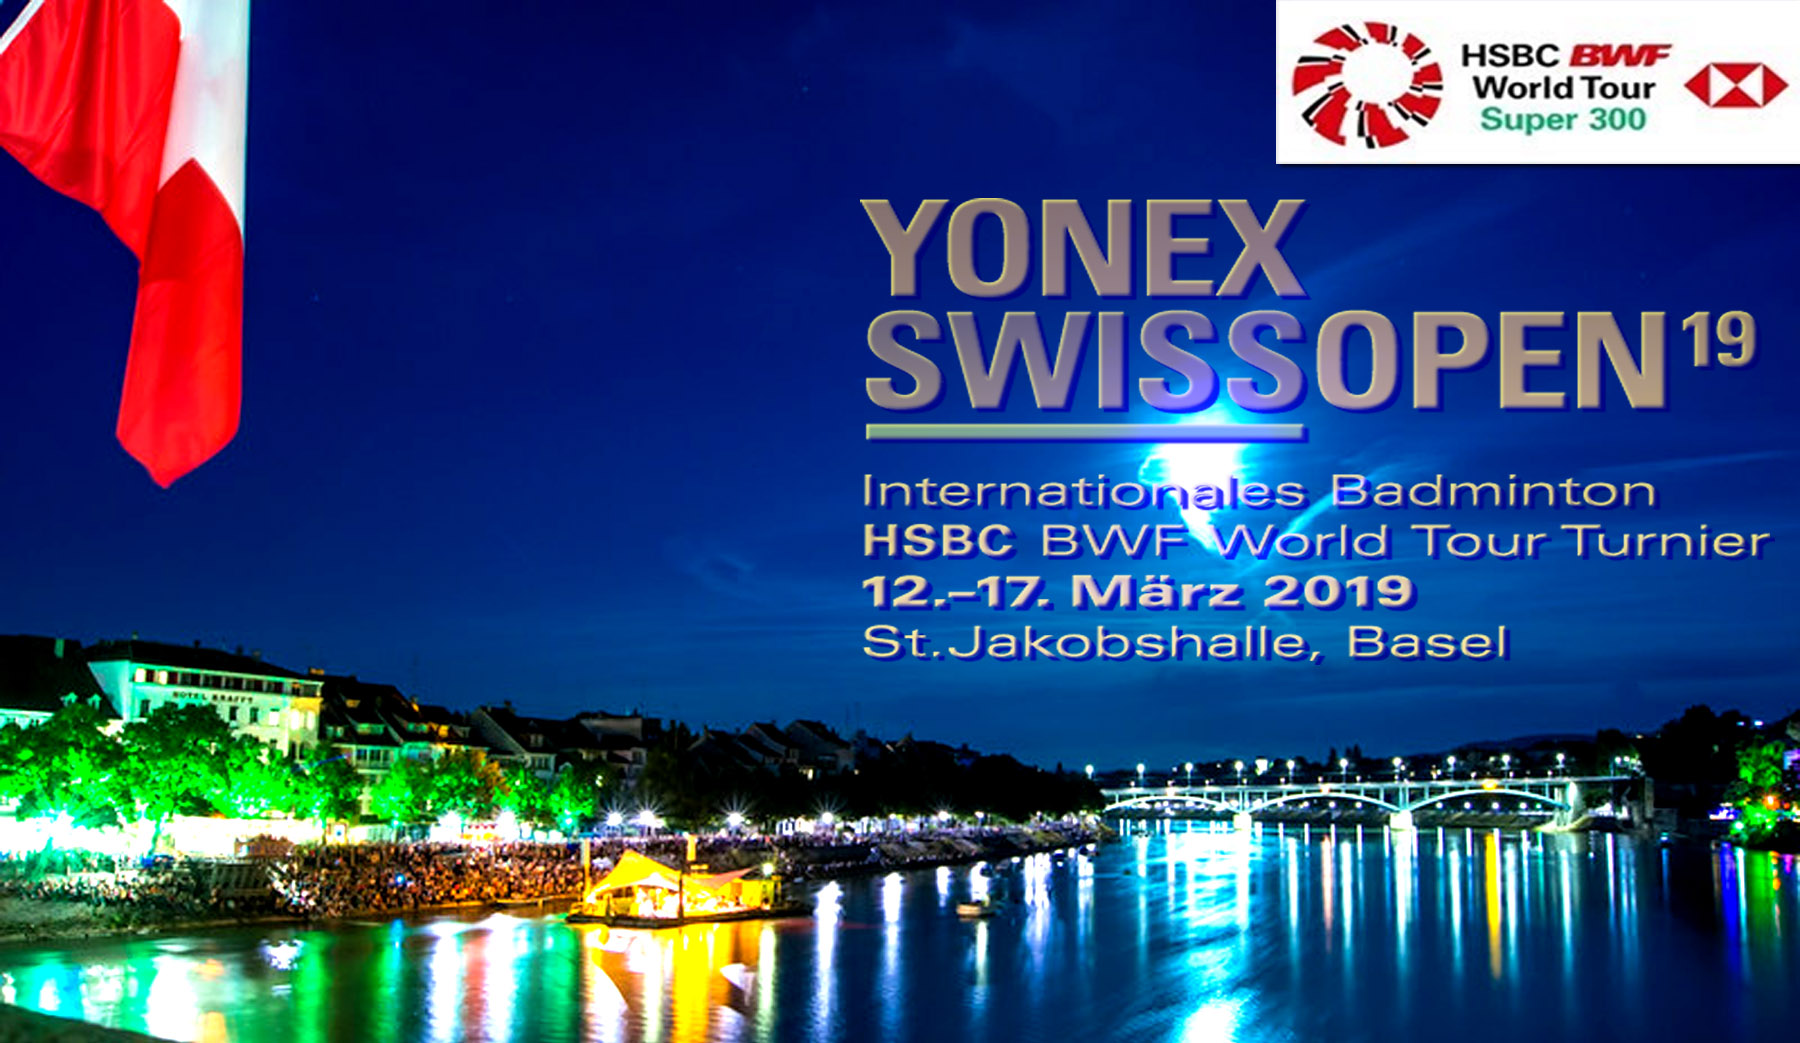 โปรแกรมการแข่งขัน แบดมินตัน YONEX Swiss Open 2019 รอบ 32 คน 13 มี.ค